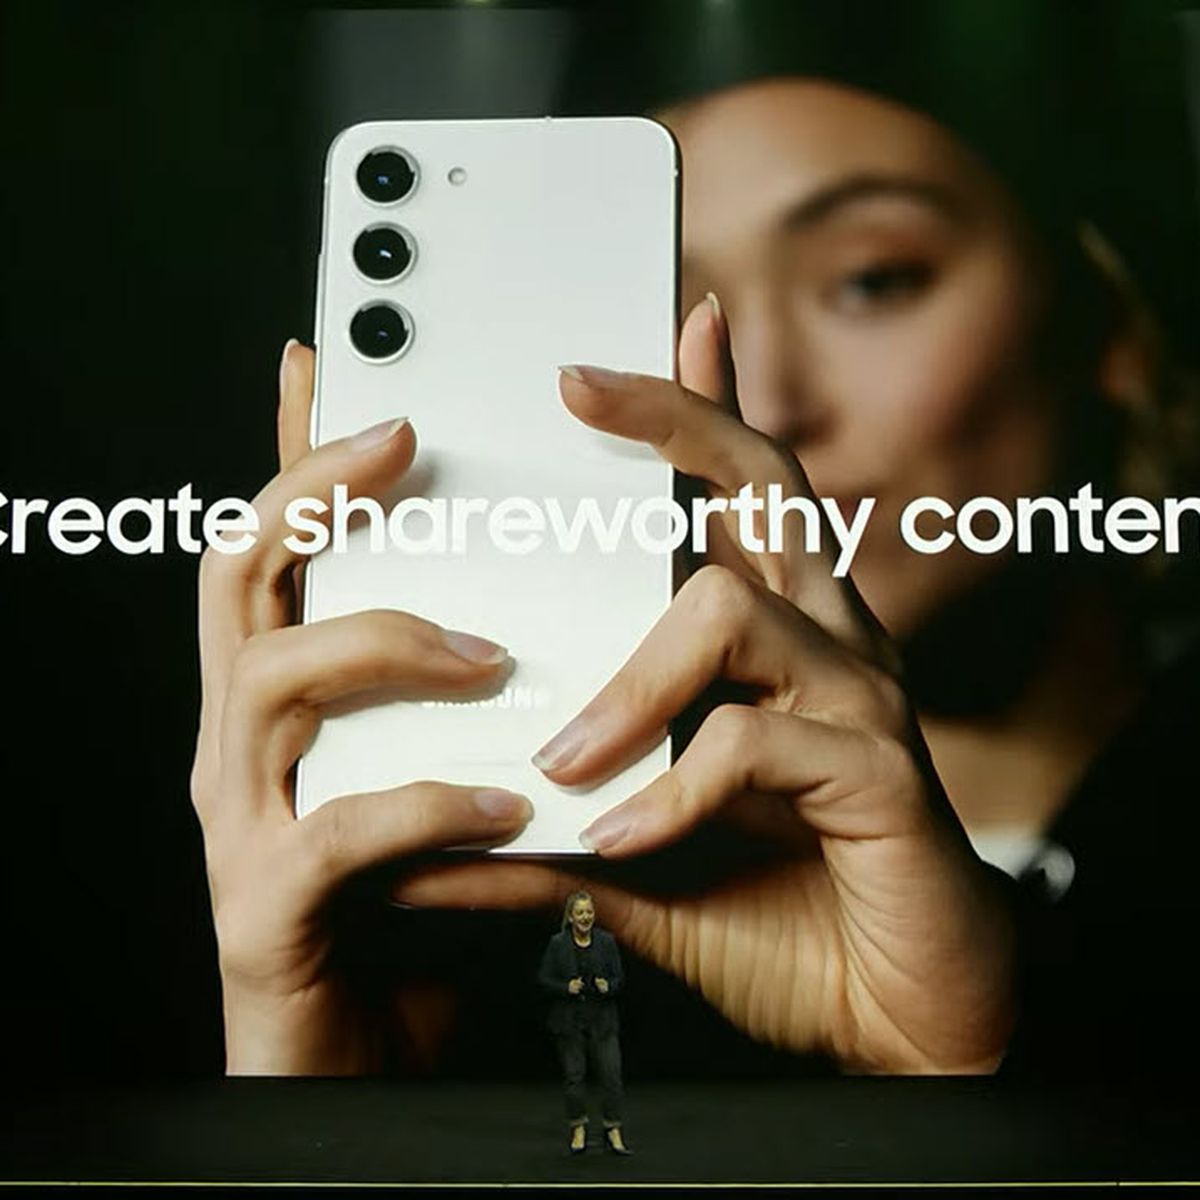 Samsung Galaxy S23: características, precio y detalles de la cámara